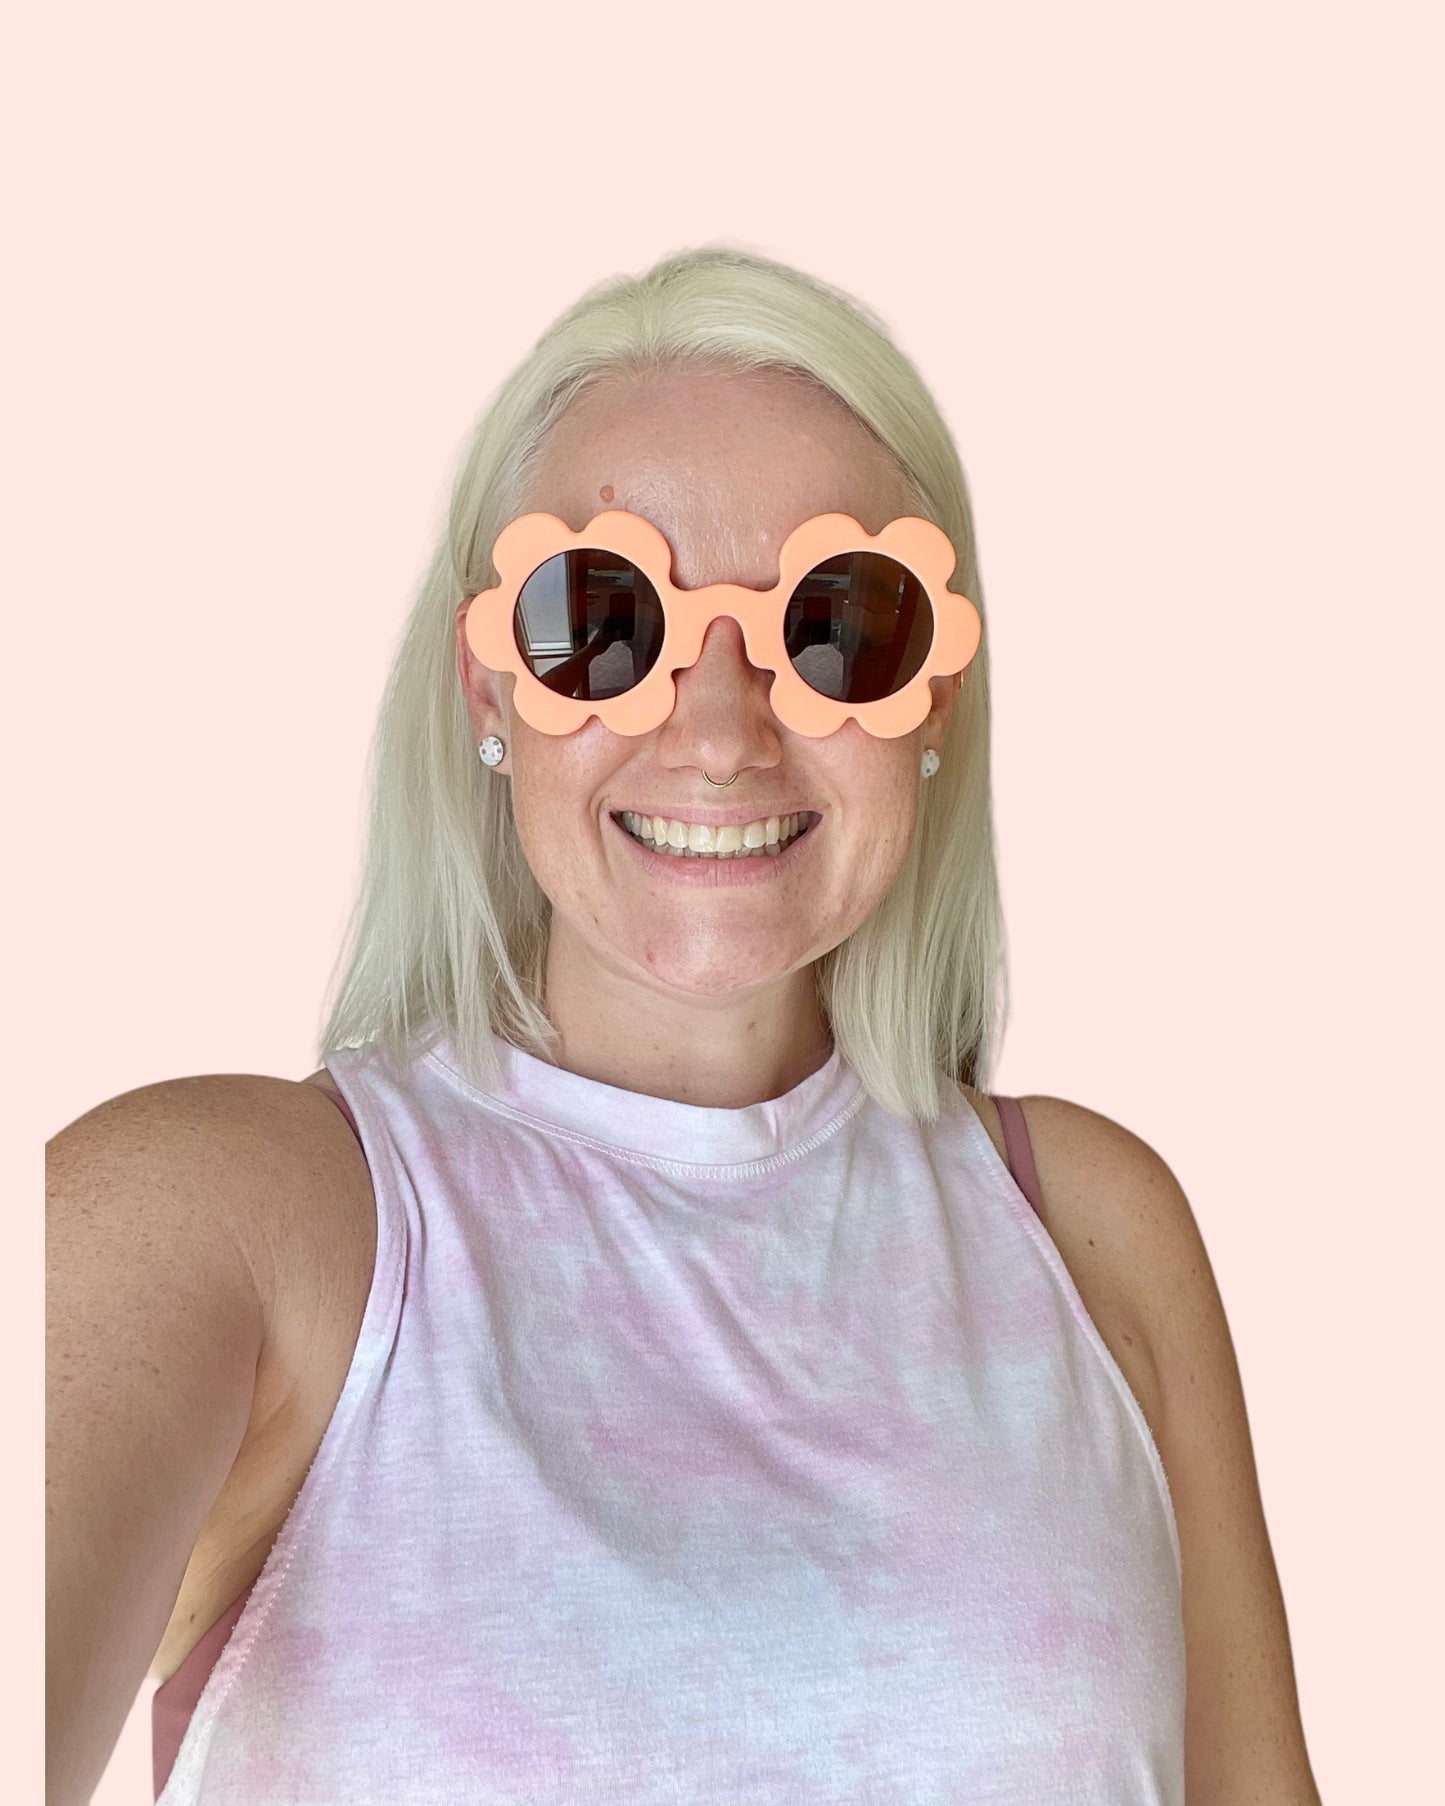 Women’s Orange Retro Sunglasses